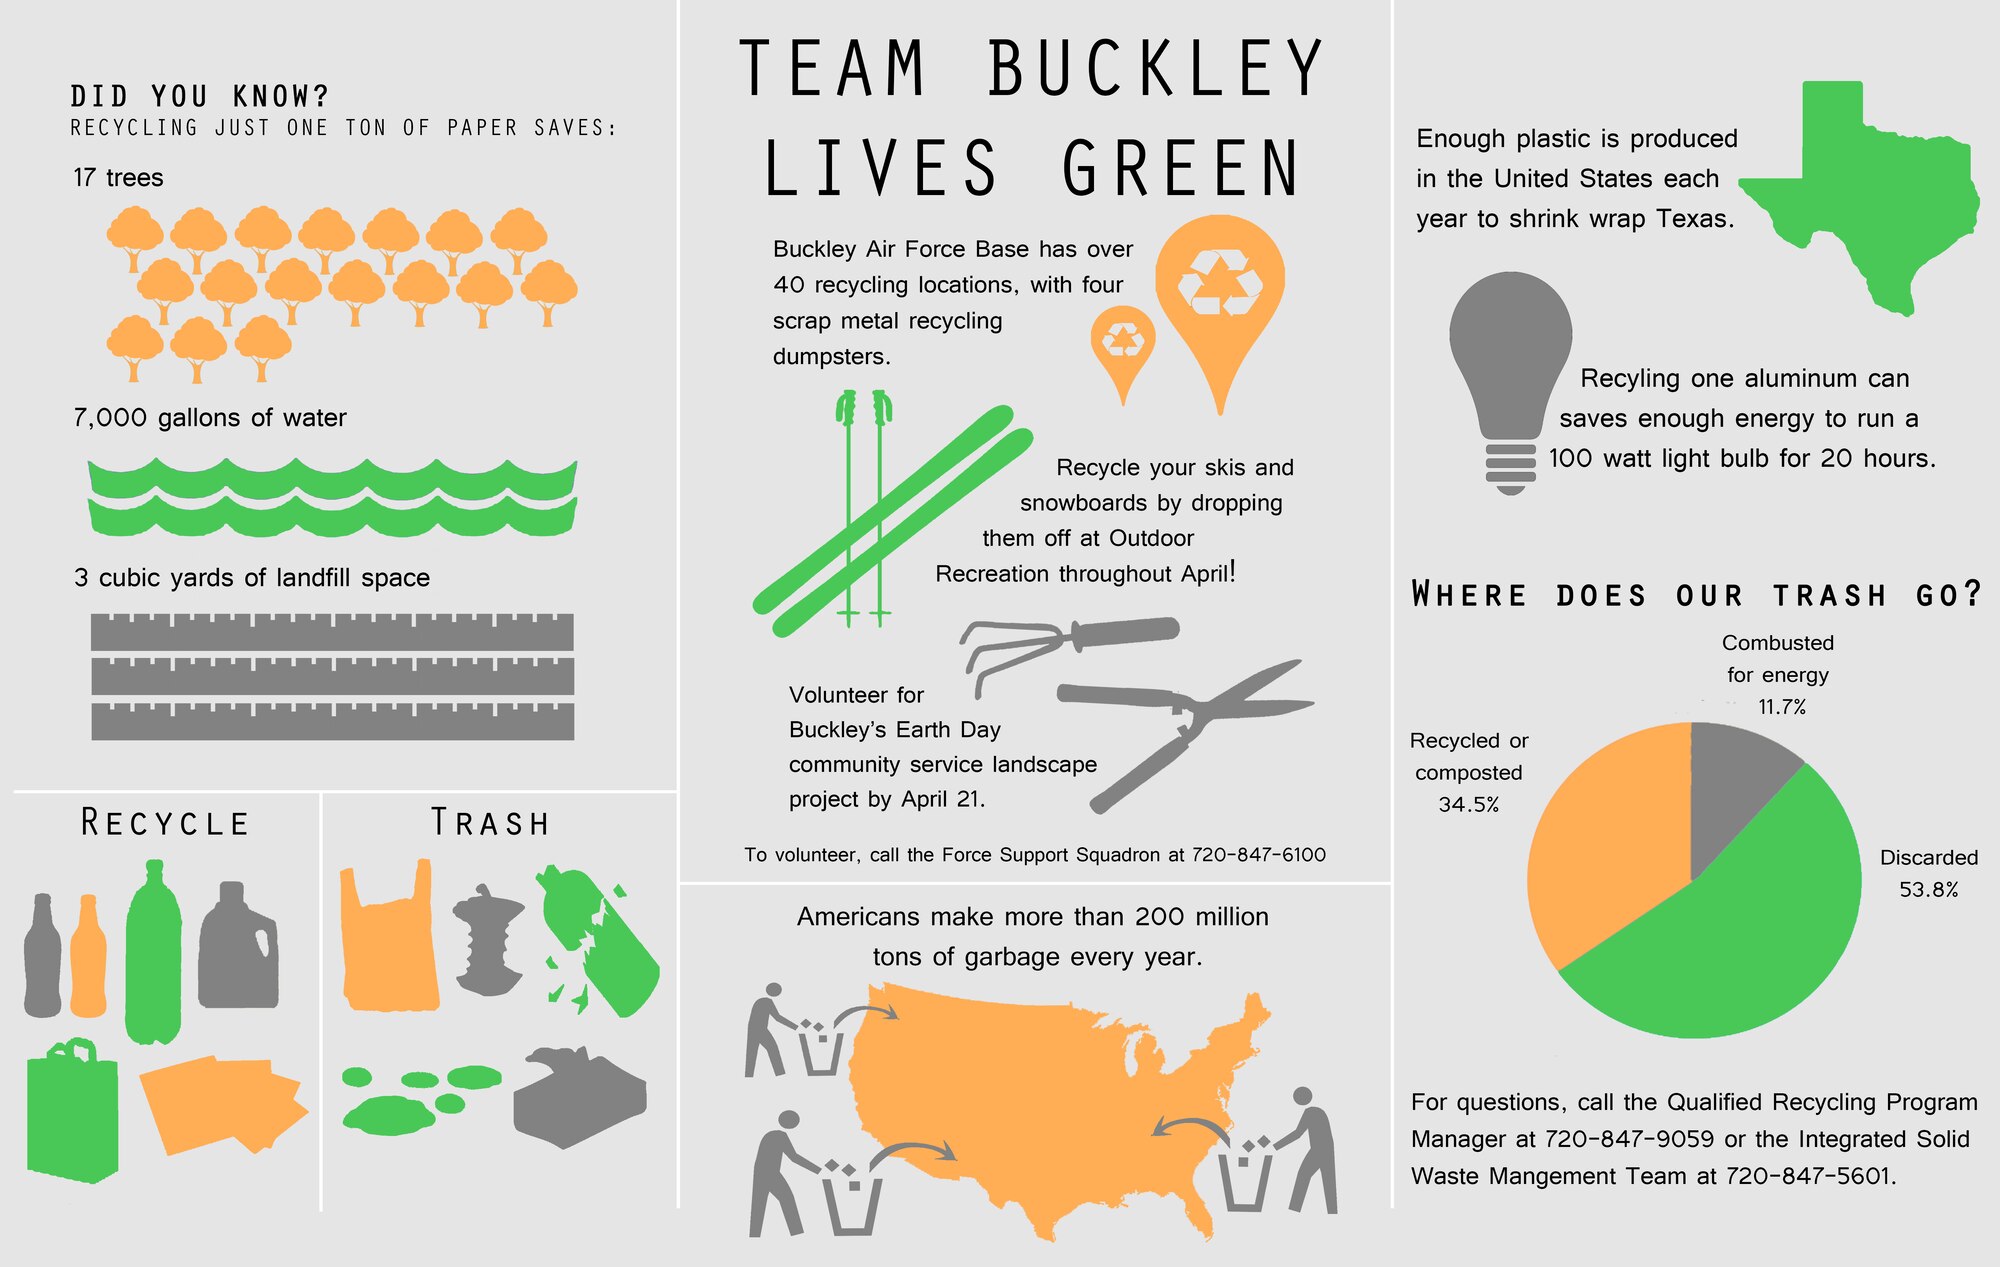 Team Buckley lives green